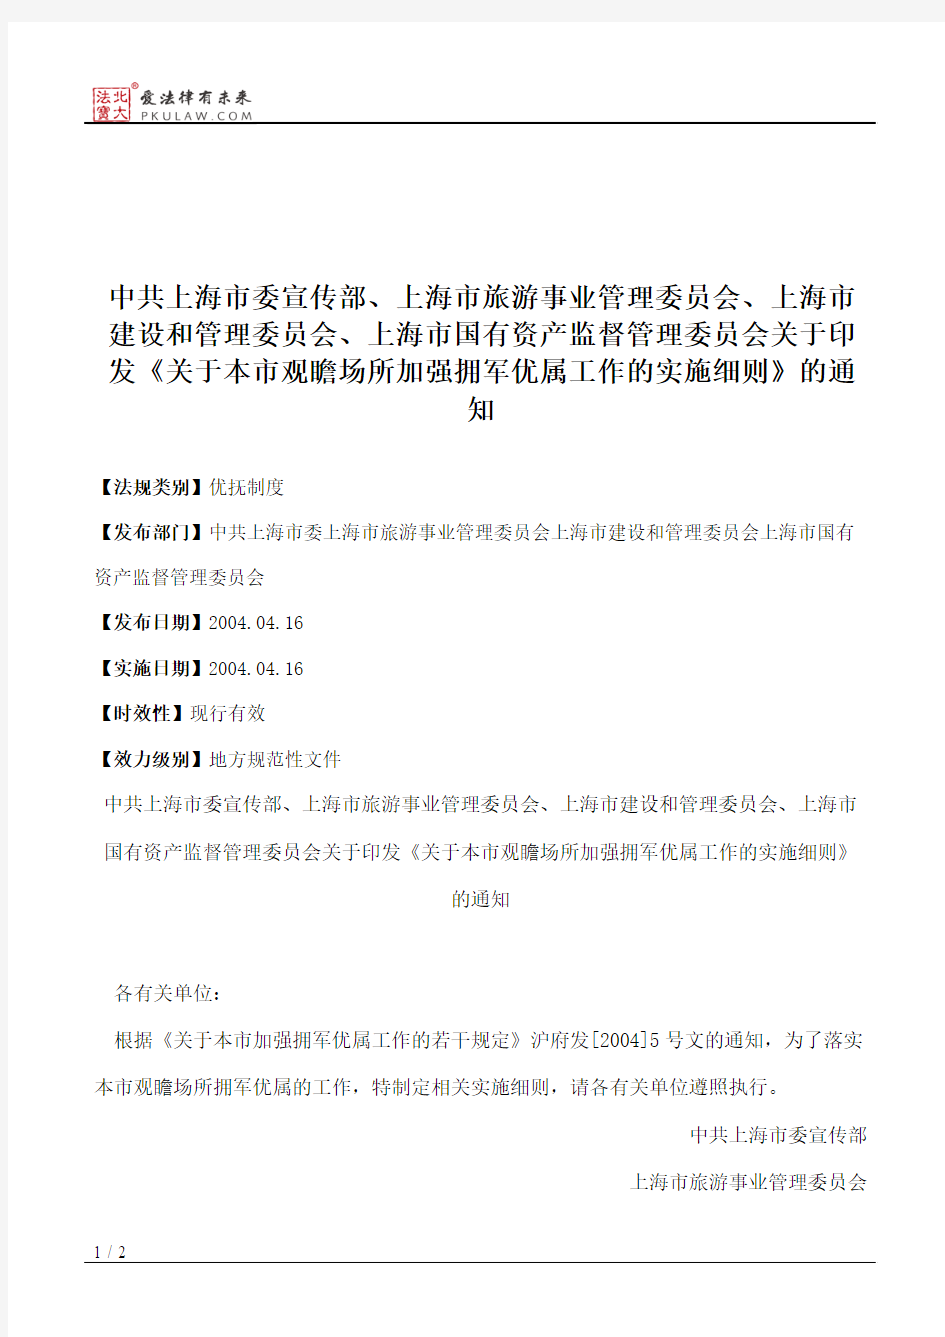 中共上海市委宣传部、上海市旅游事业管理委员会、上海市建设和管